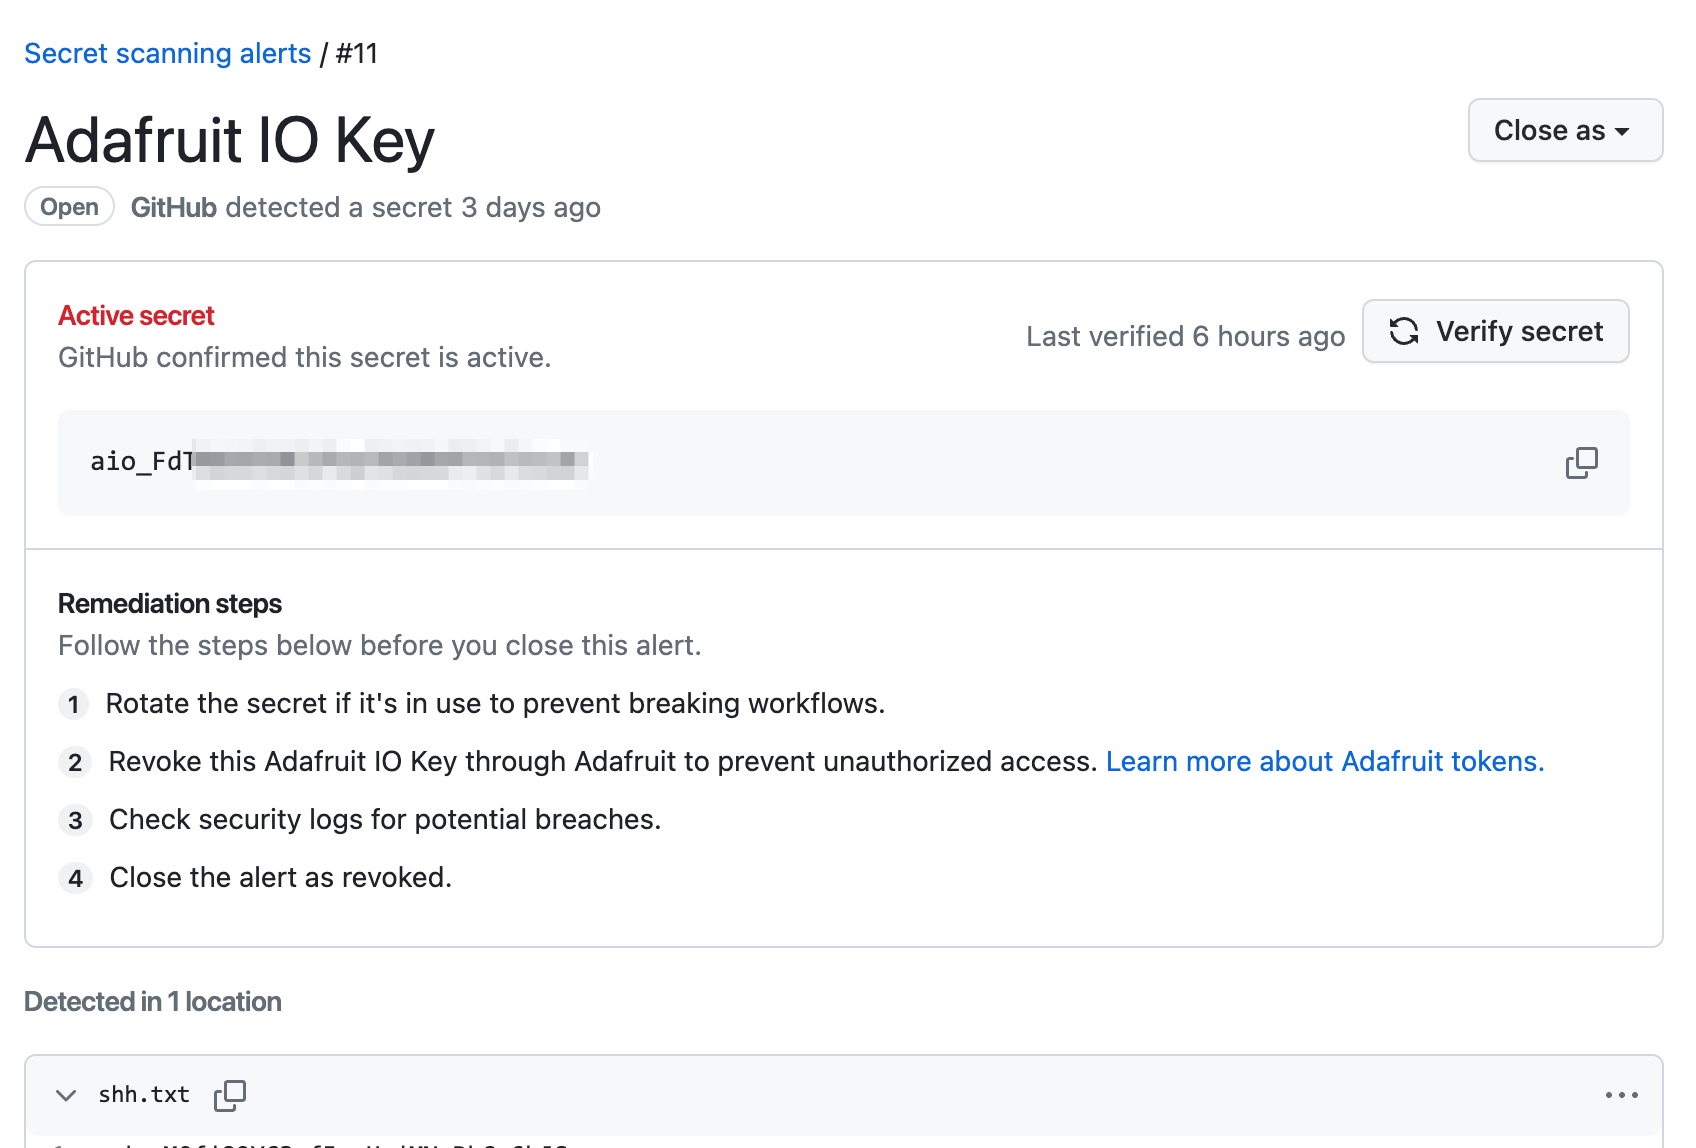 screenshot of an adafruit io key alert with a verify secret button